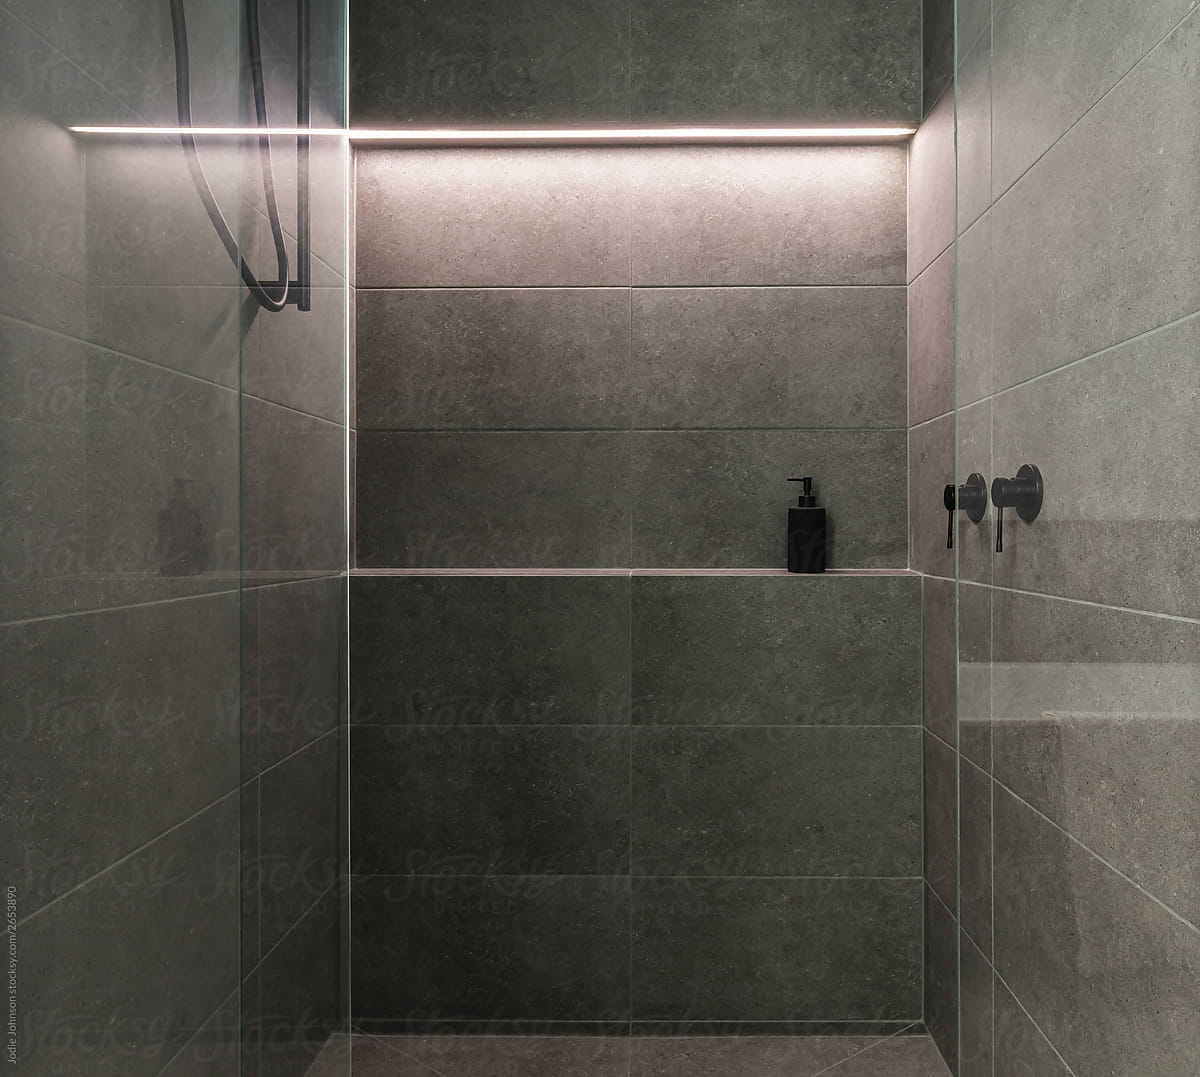 Shower room lighting